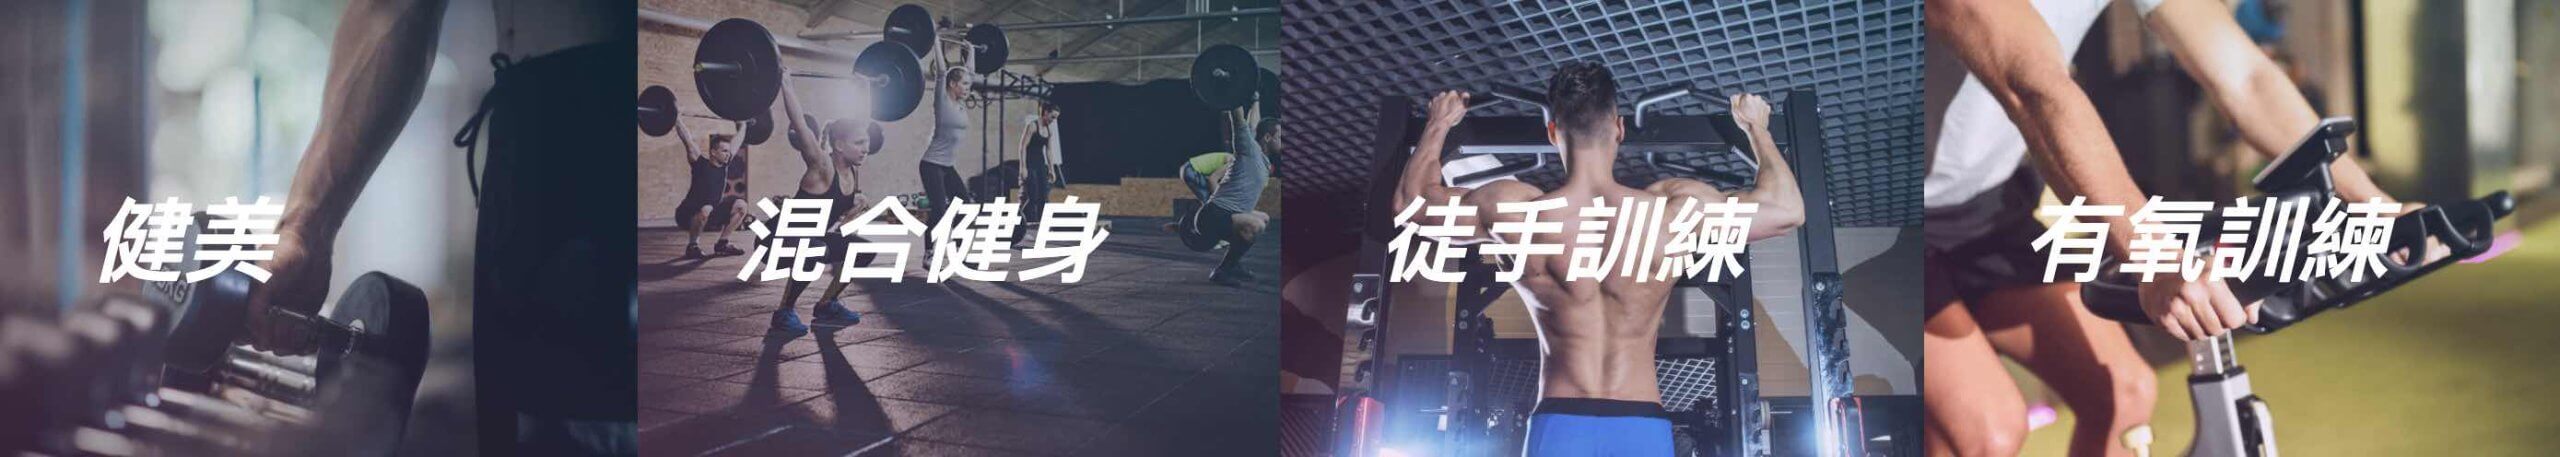 all day fitness的特許經營香港區加盟店項目3